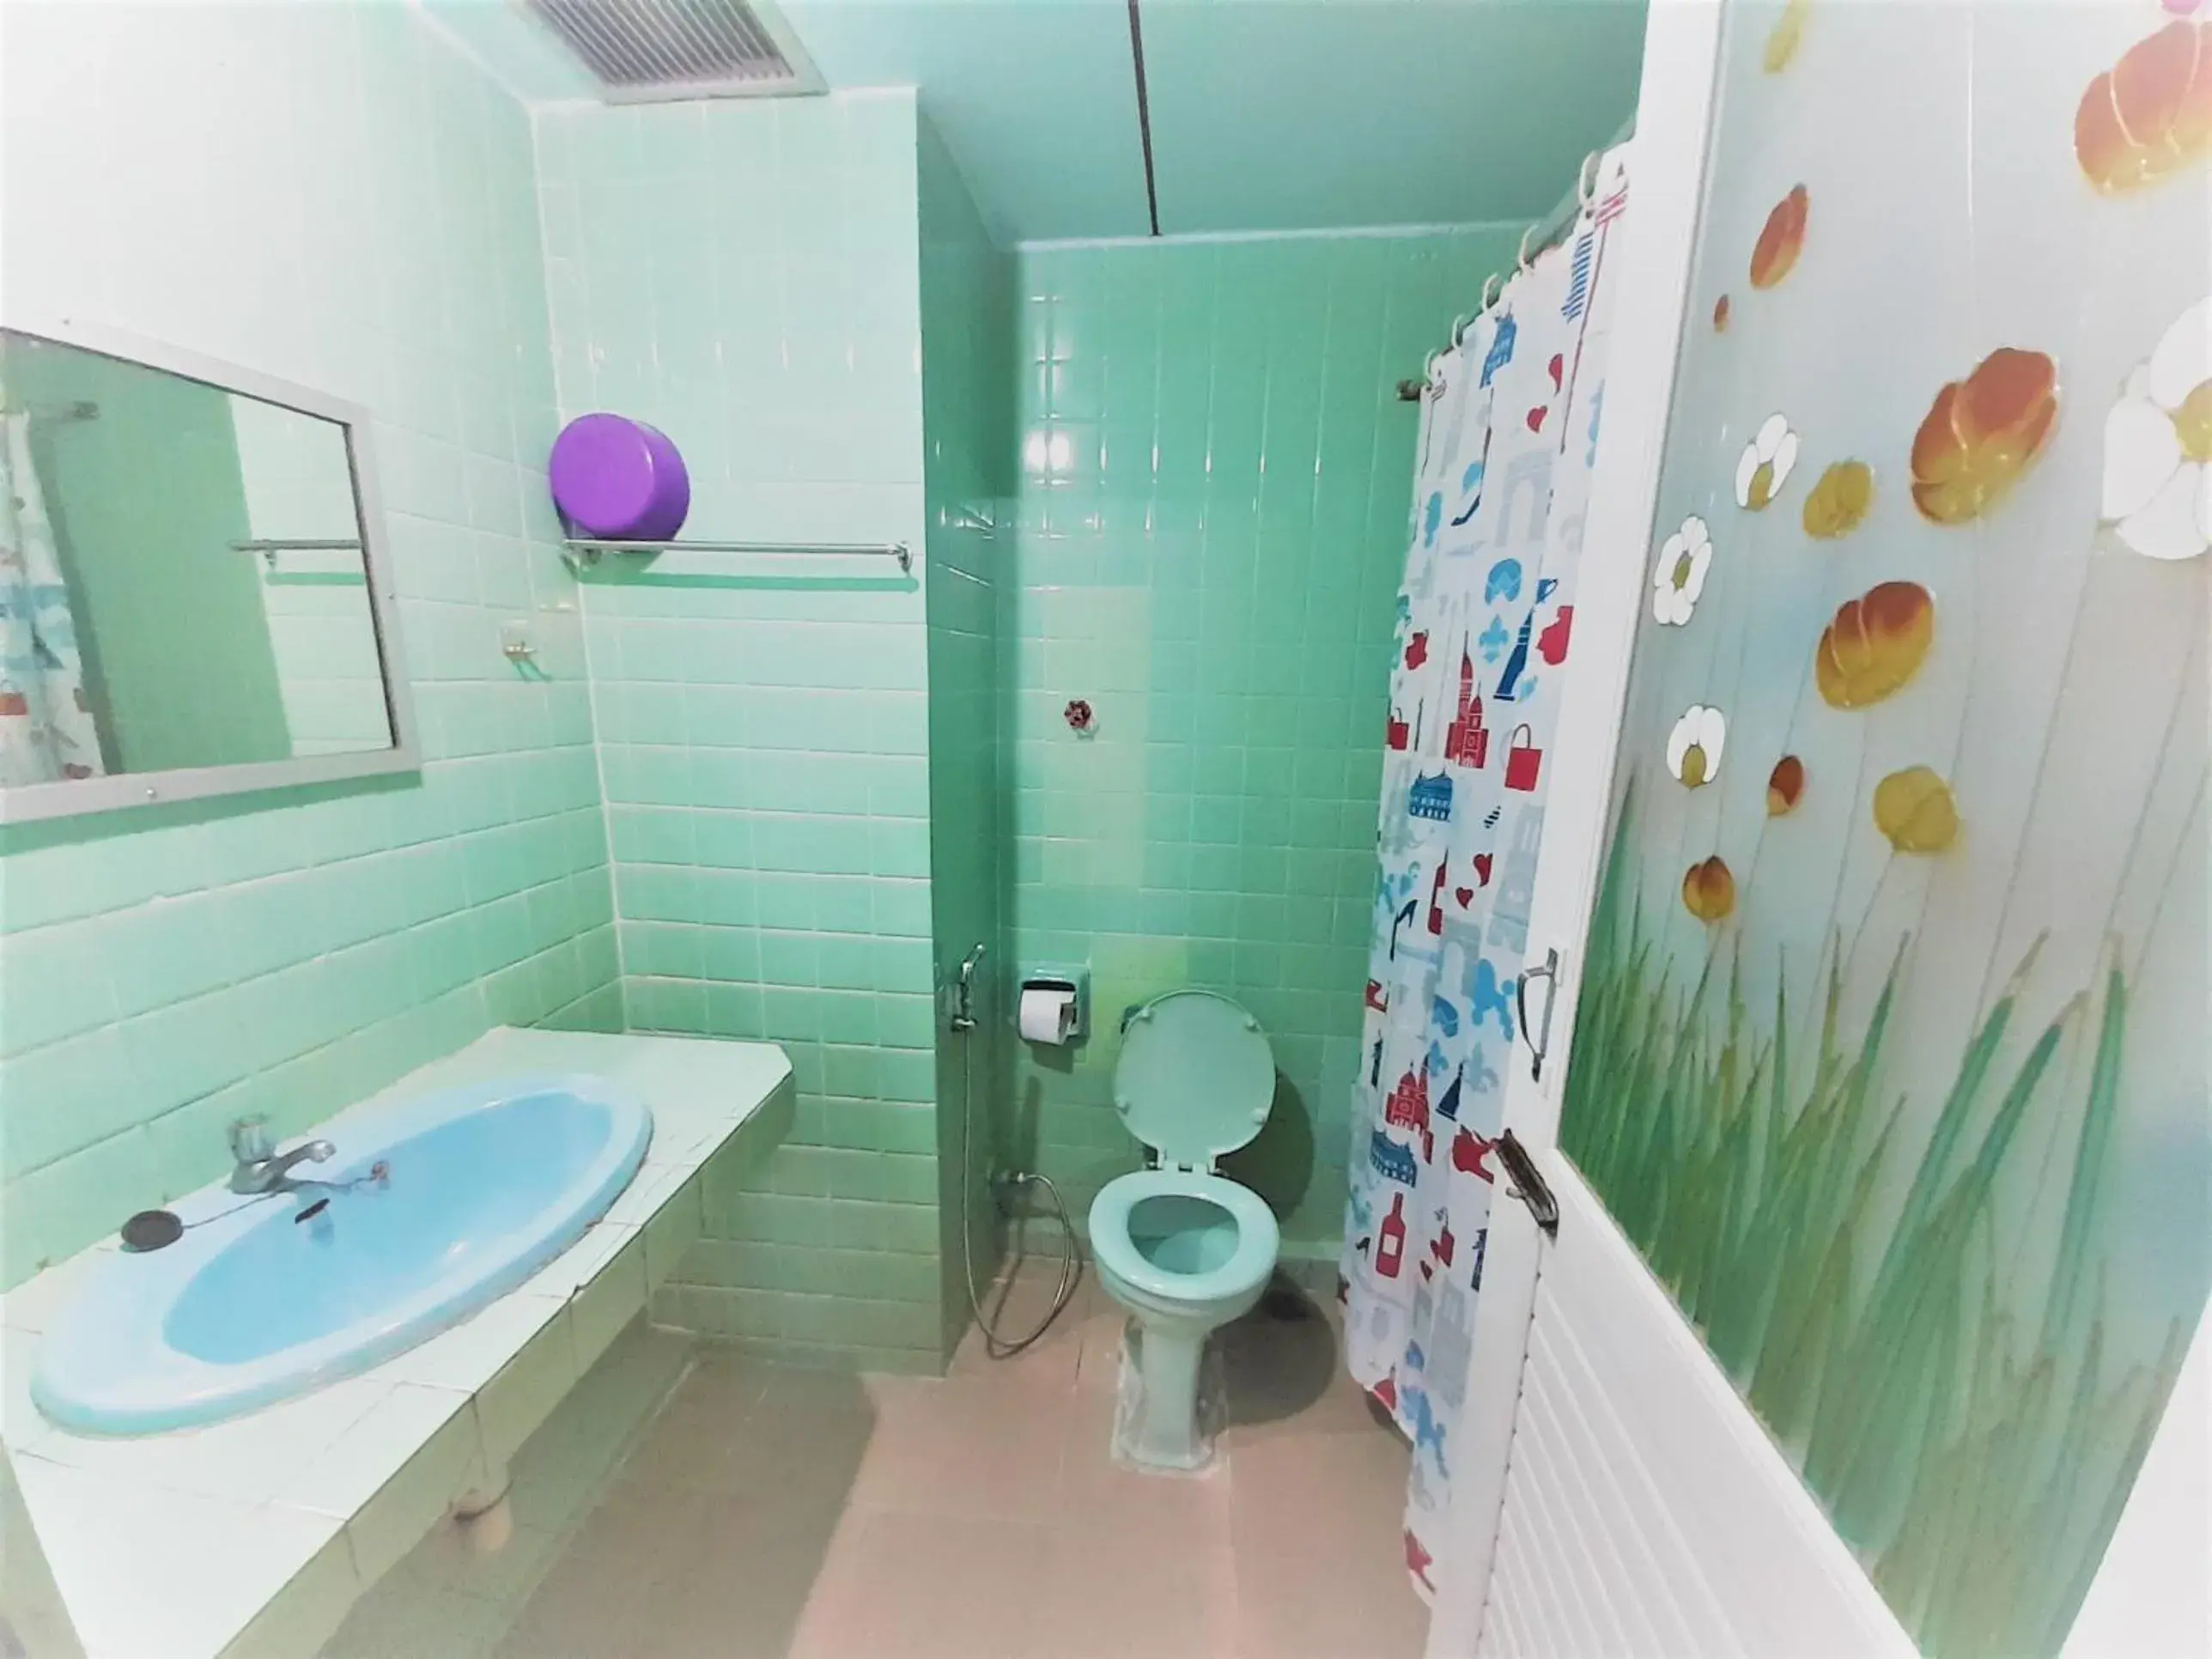 Bathroom in Singapore Hotel